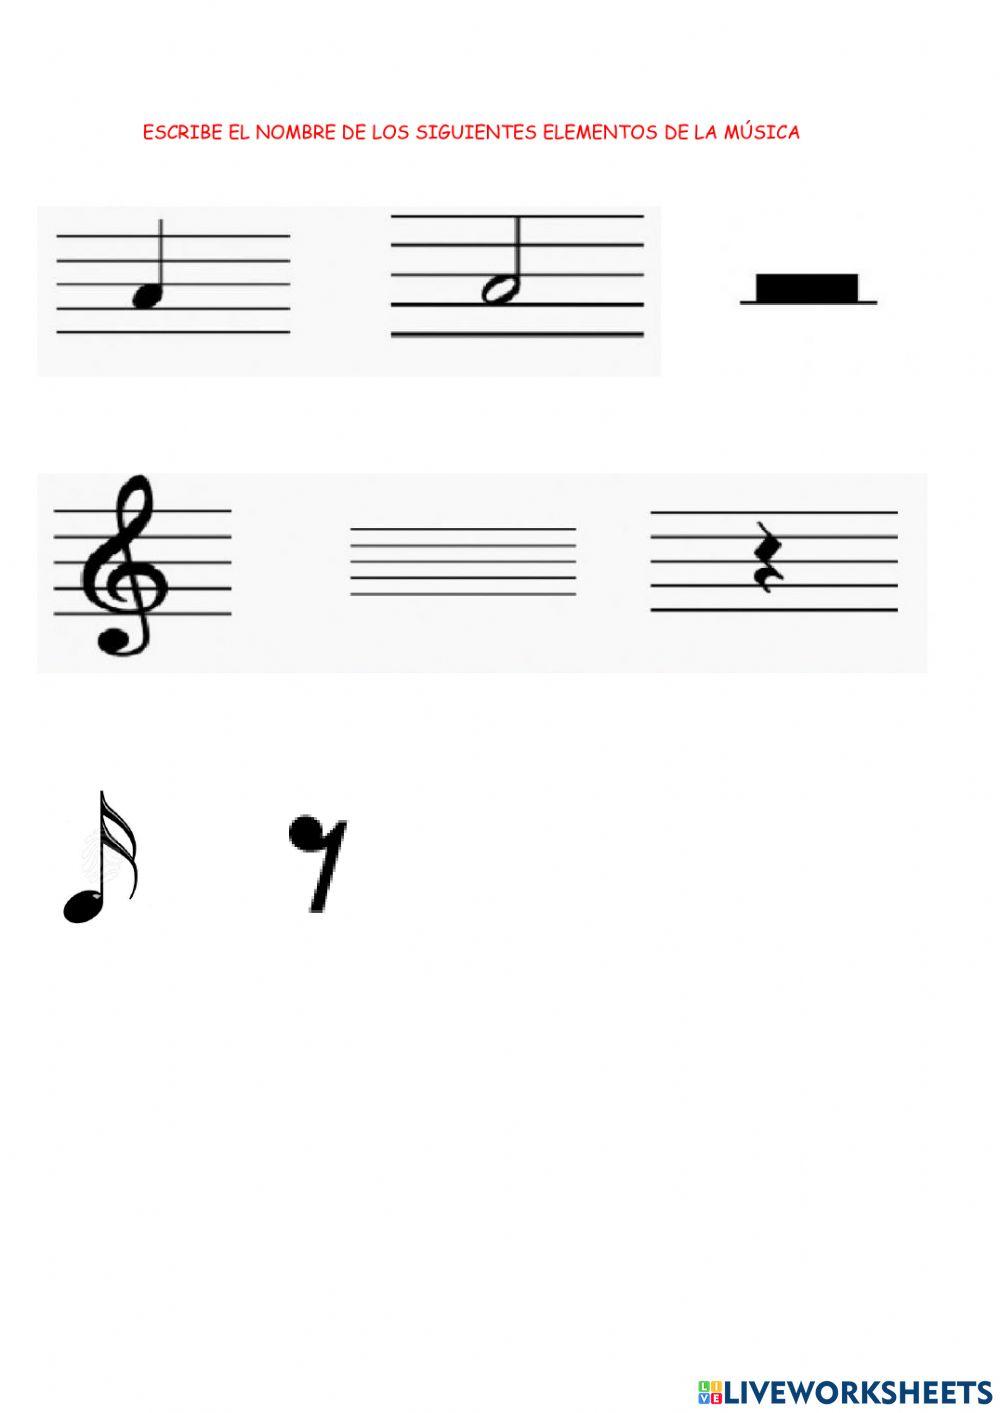 Notas musicales y elementos musicales